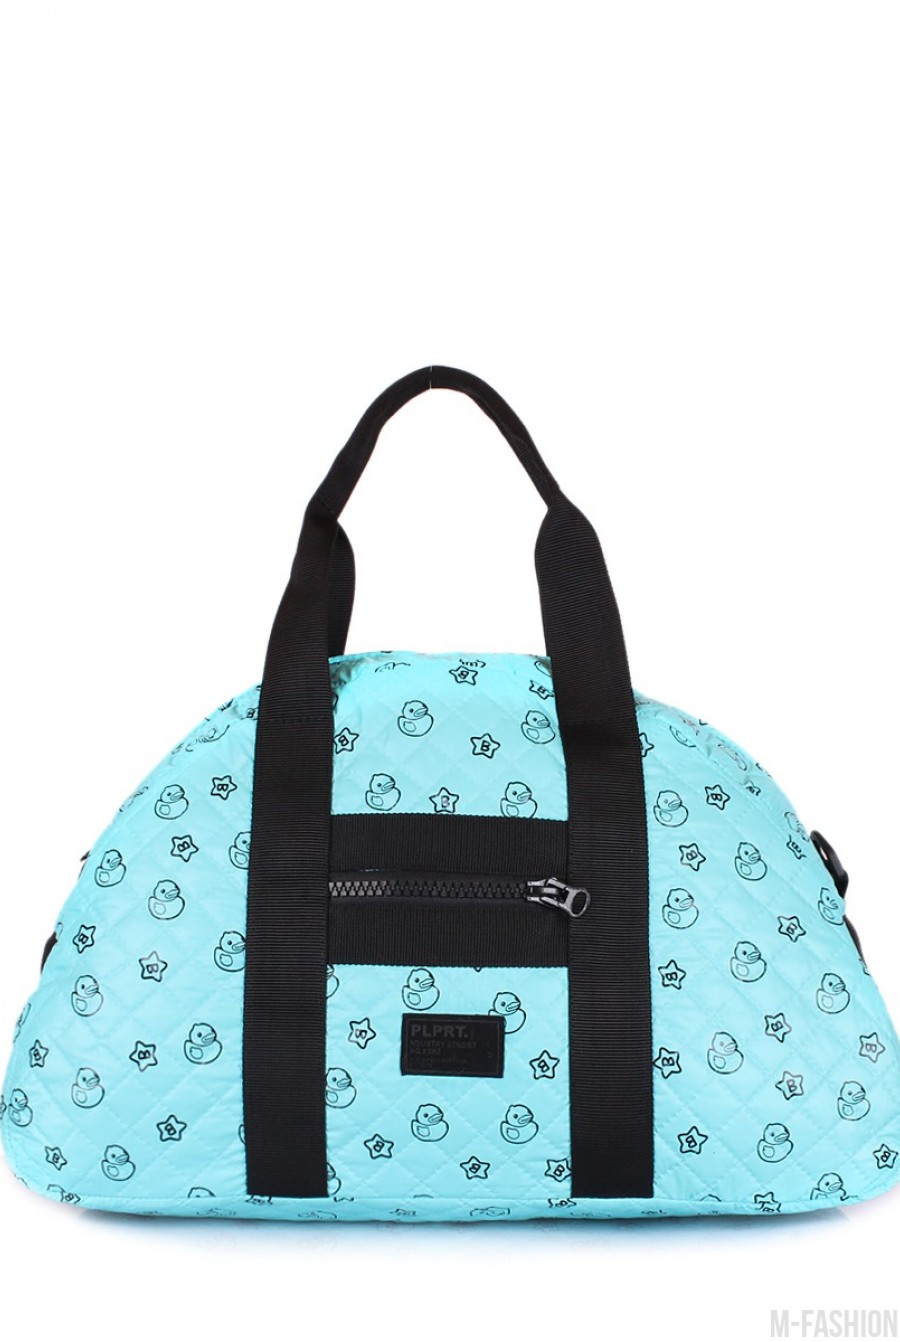 Стеганая дорожная сумка с голубой расцветкой и позитивным принтом - Фото 1